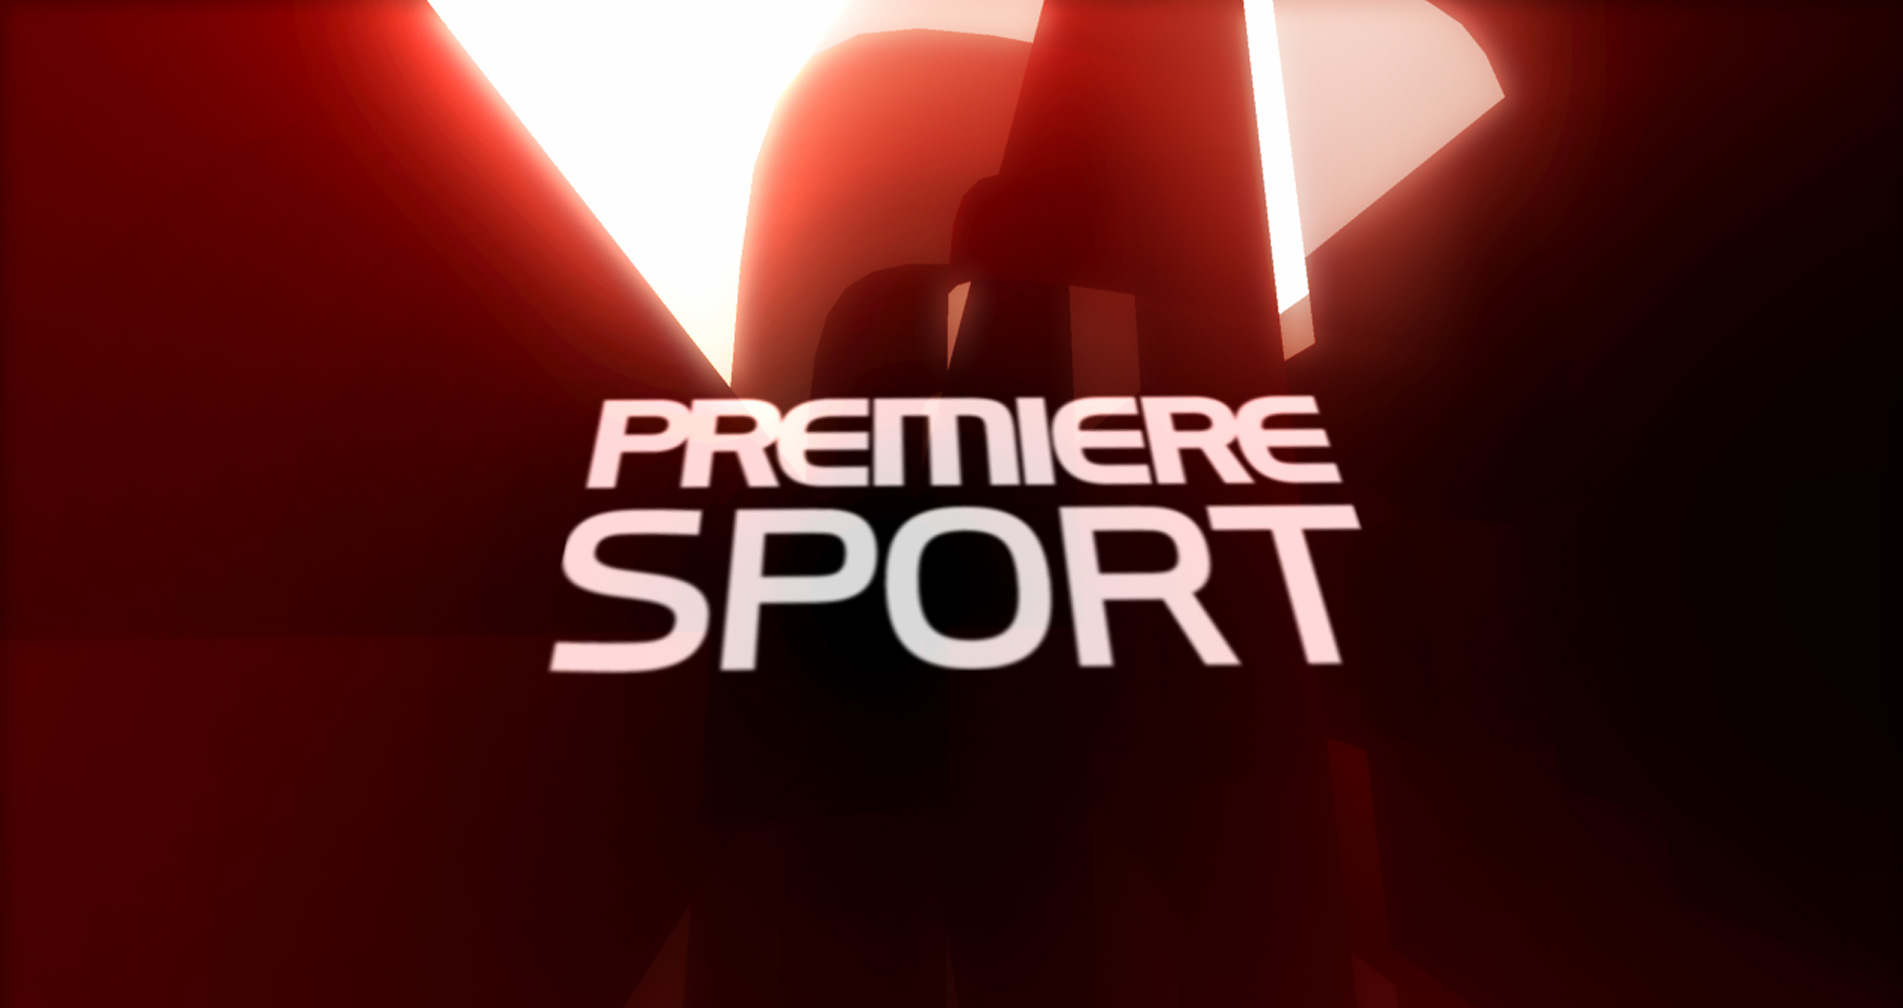 Premiere Sport branding